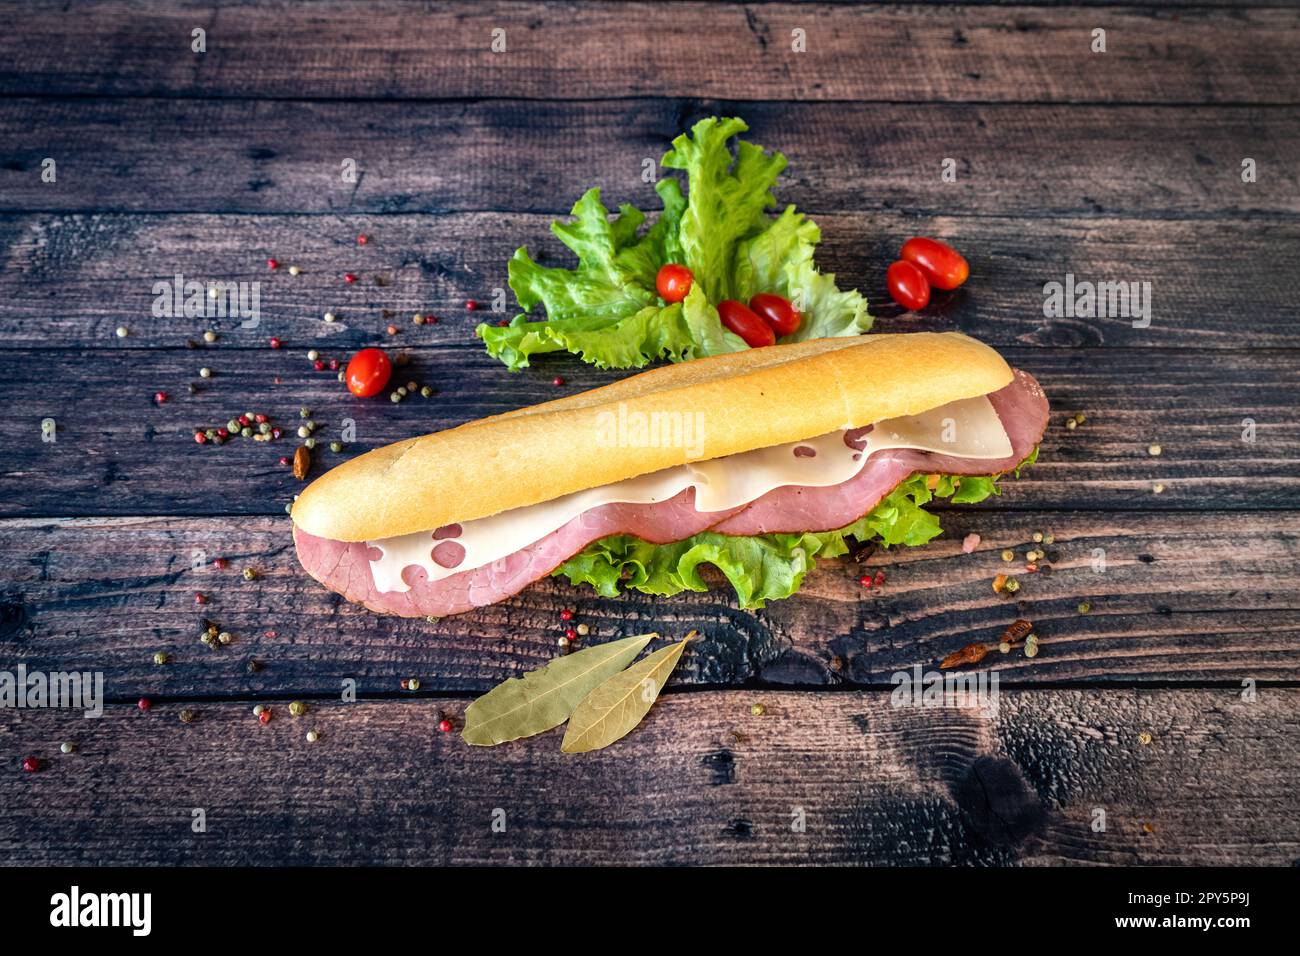 Un délicieux sandwich à la fois goûté et prêt pour le déjeuner Banque D'Images